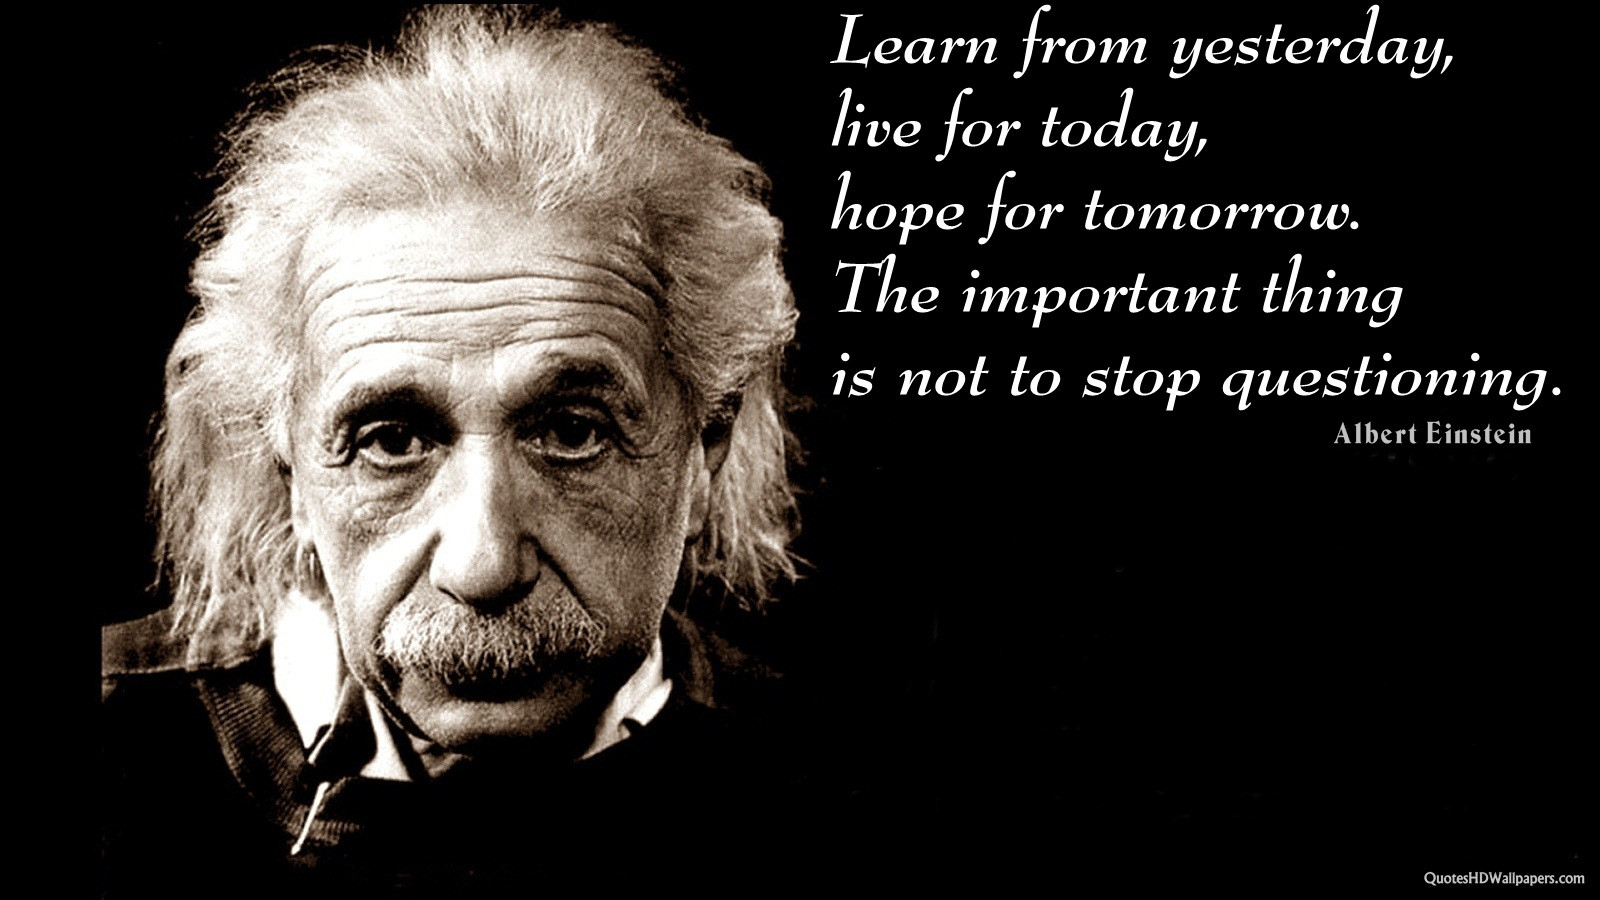 Albert Einstein Education Quotes
 Albert Einstein Education Quotes Learning QuotesGram